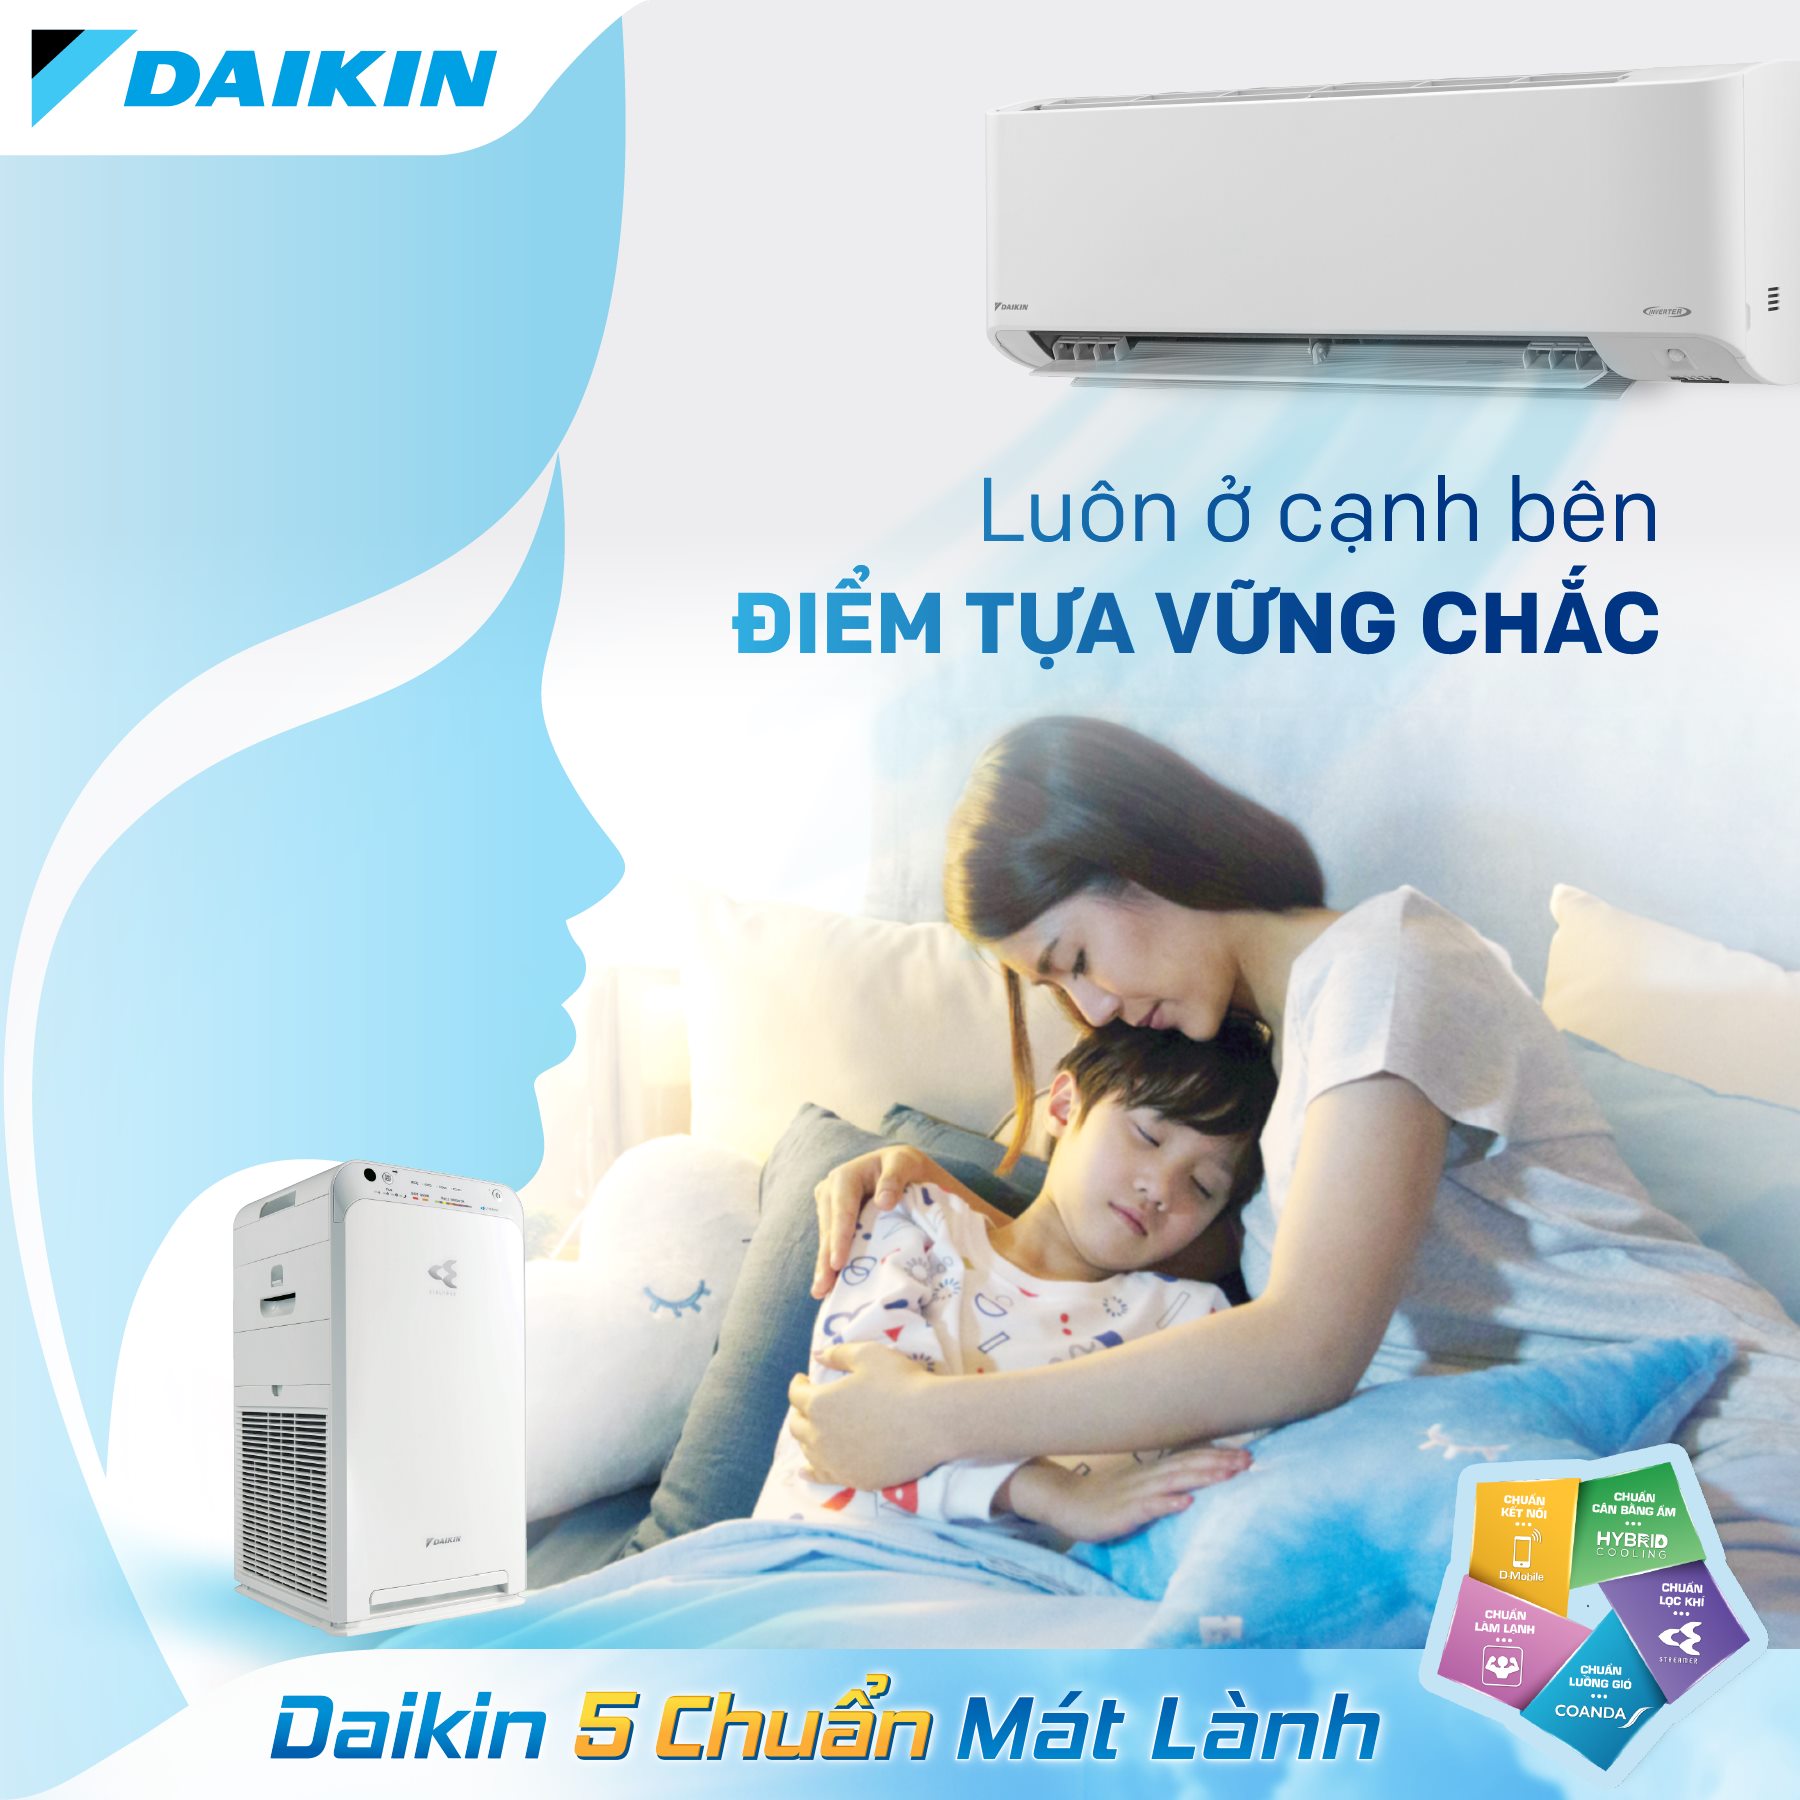 Top 3 điều hòa Daikin Inverter tiết kiệm điện nhất đang được bán chạy